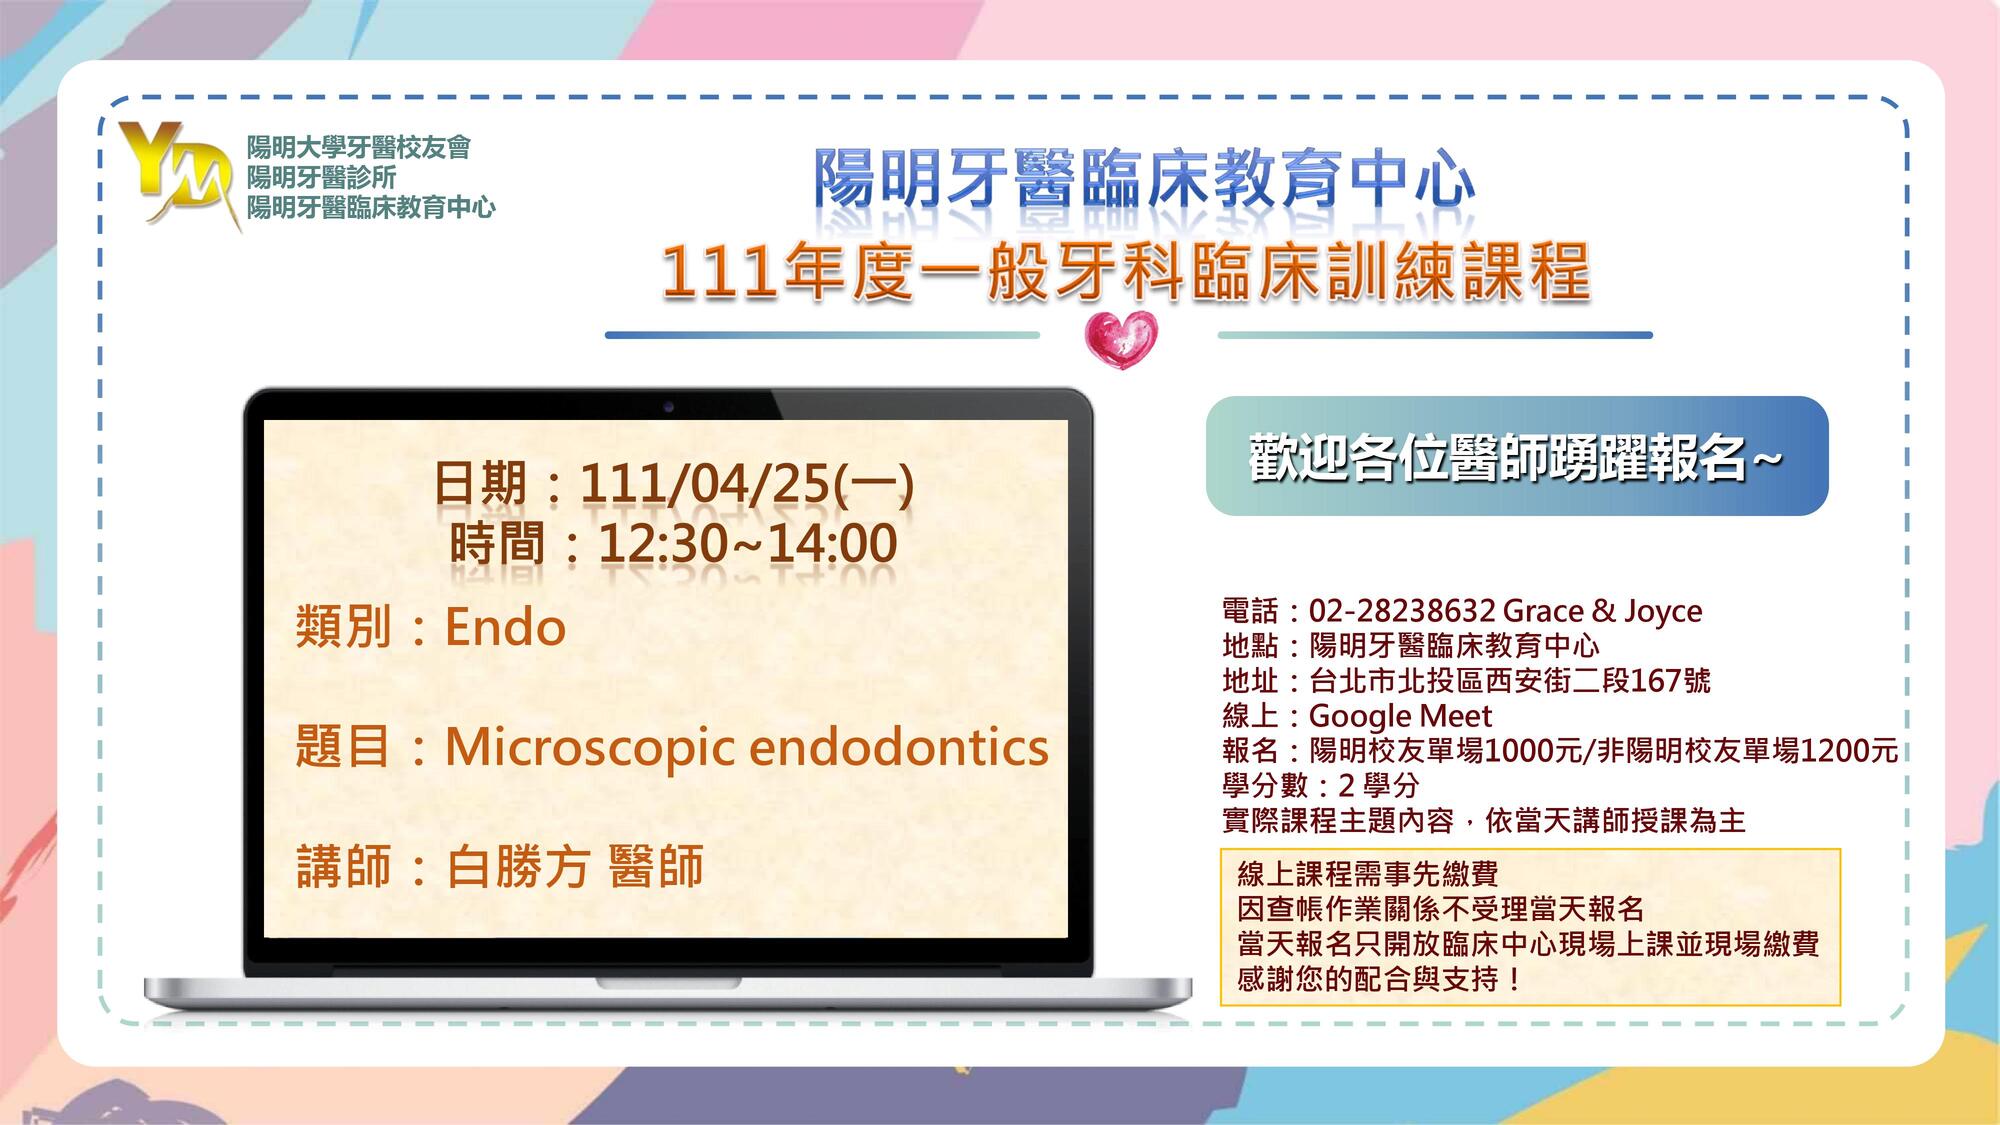 111/04/25 Microscopic endodontics